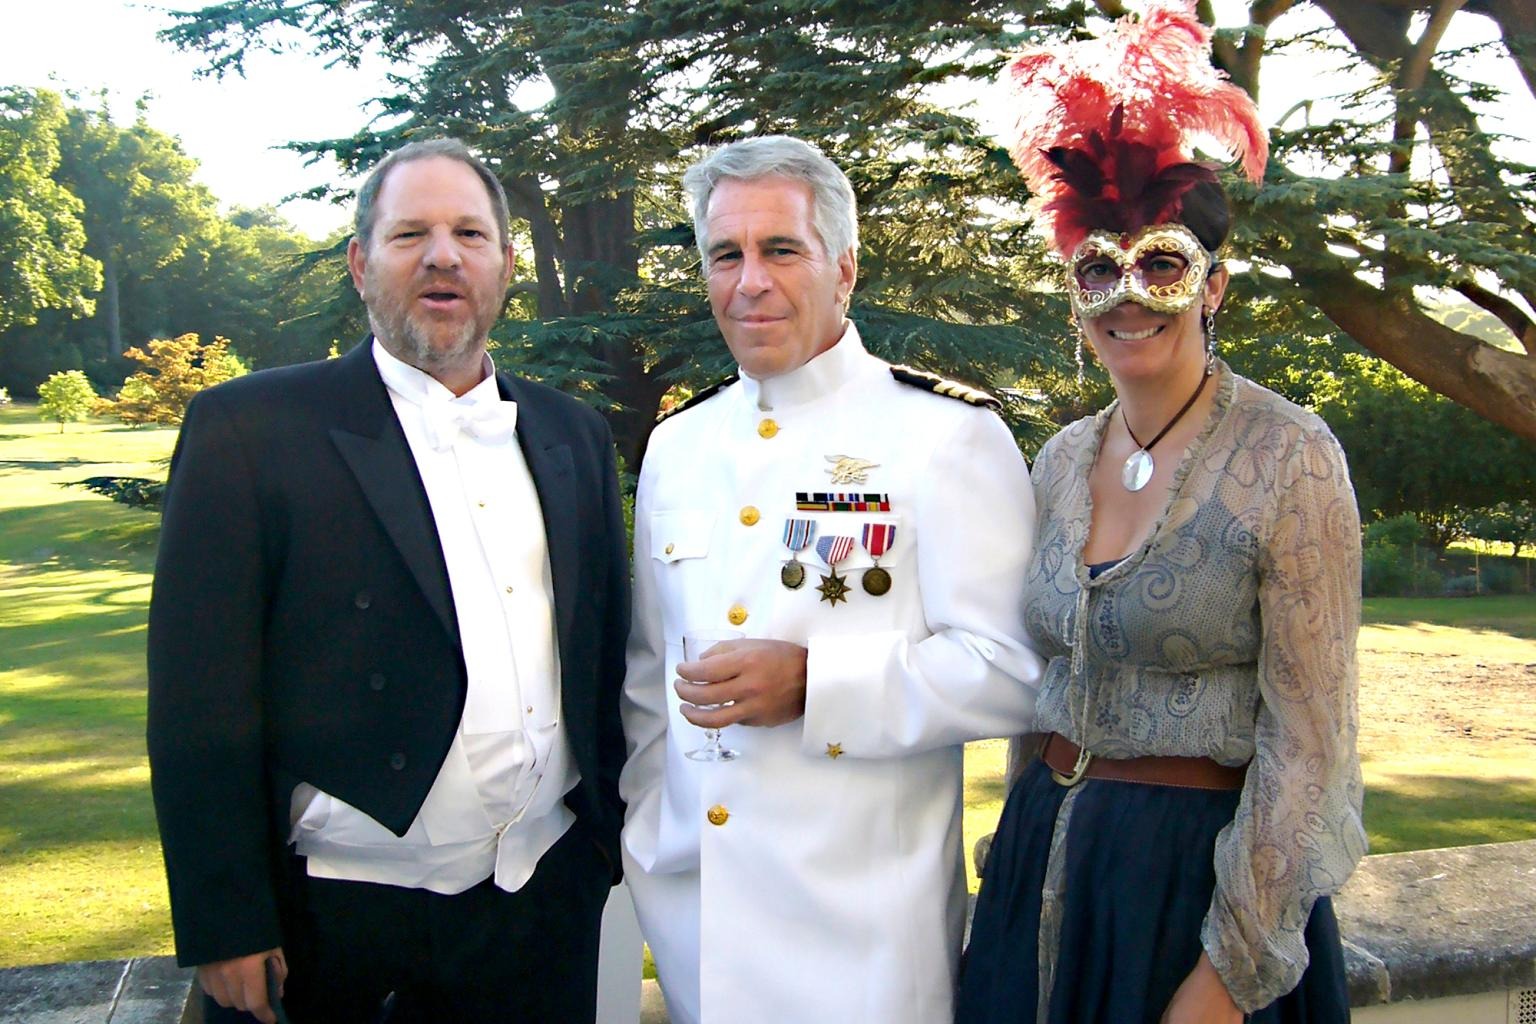 هارفي واينستين برفقة جيفري إبستين خلال حفل أقامه الأمير أندرو في قلعة وندسور عام 2006